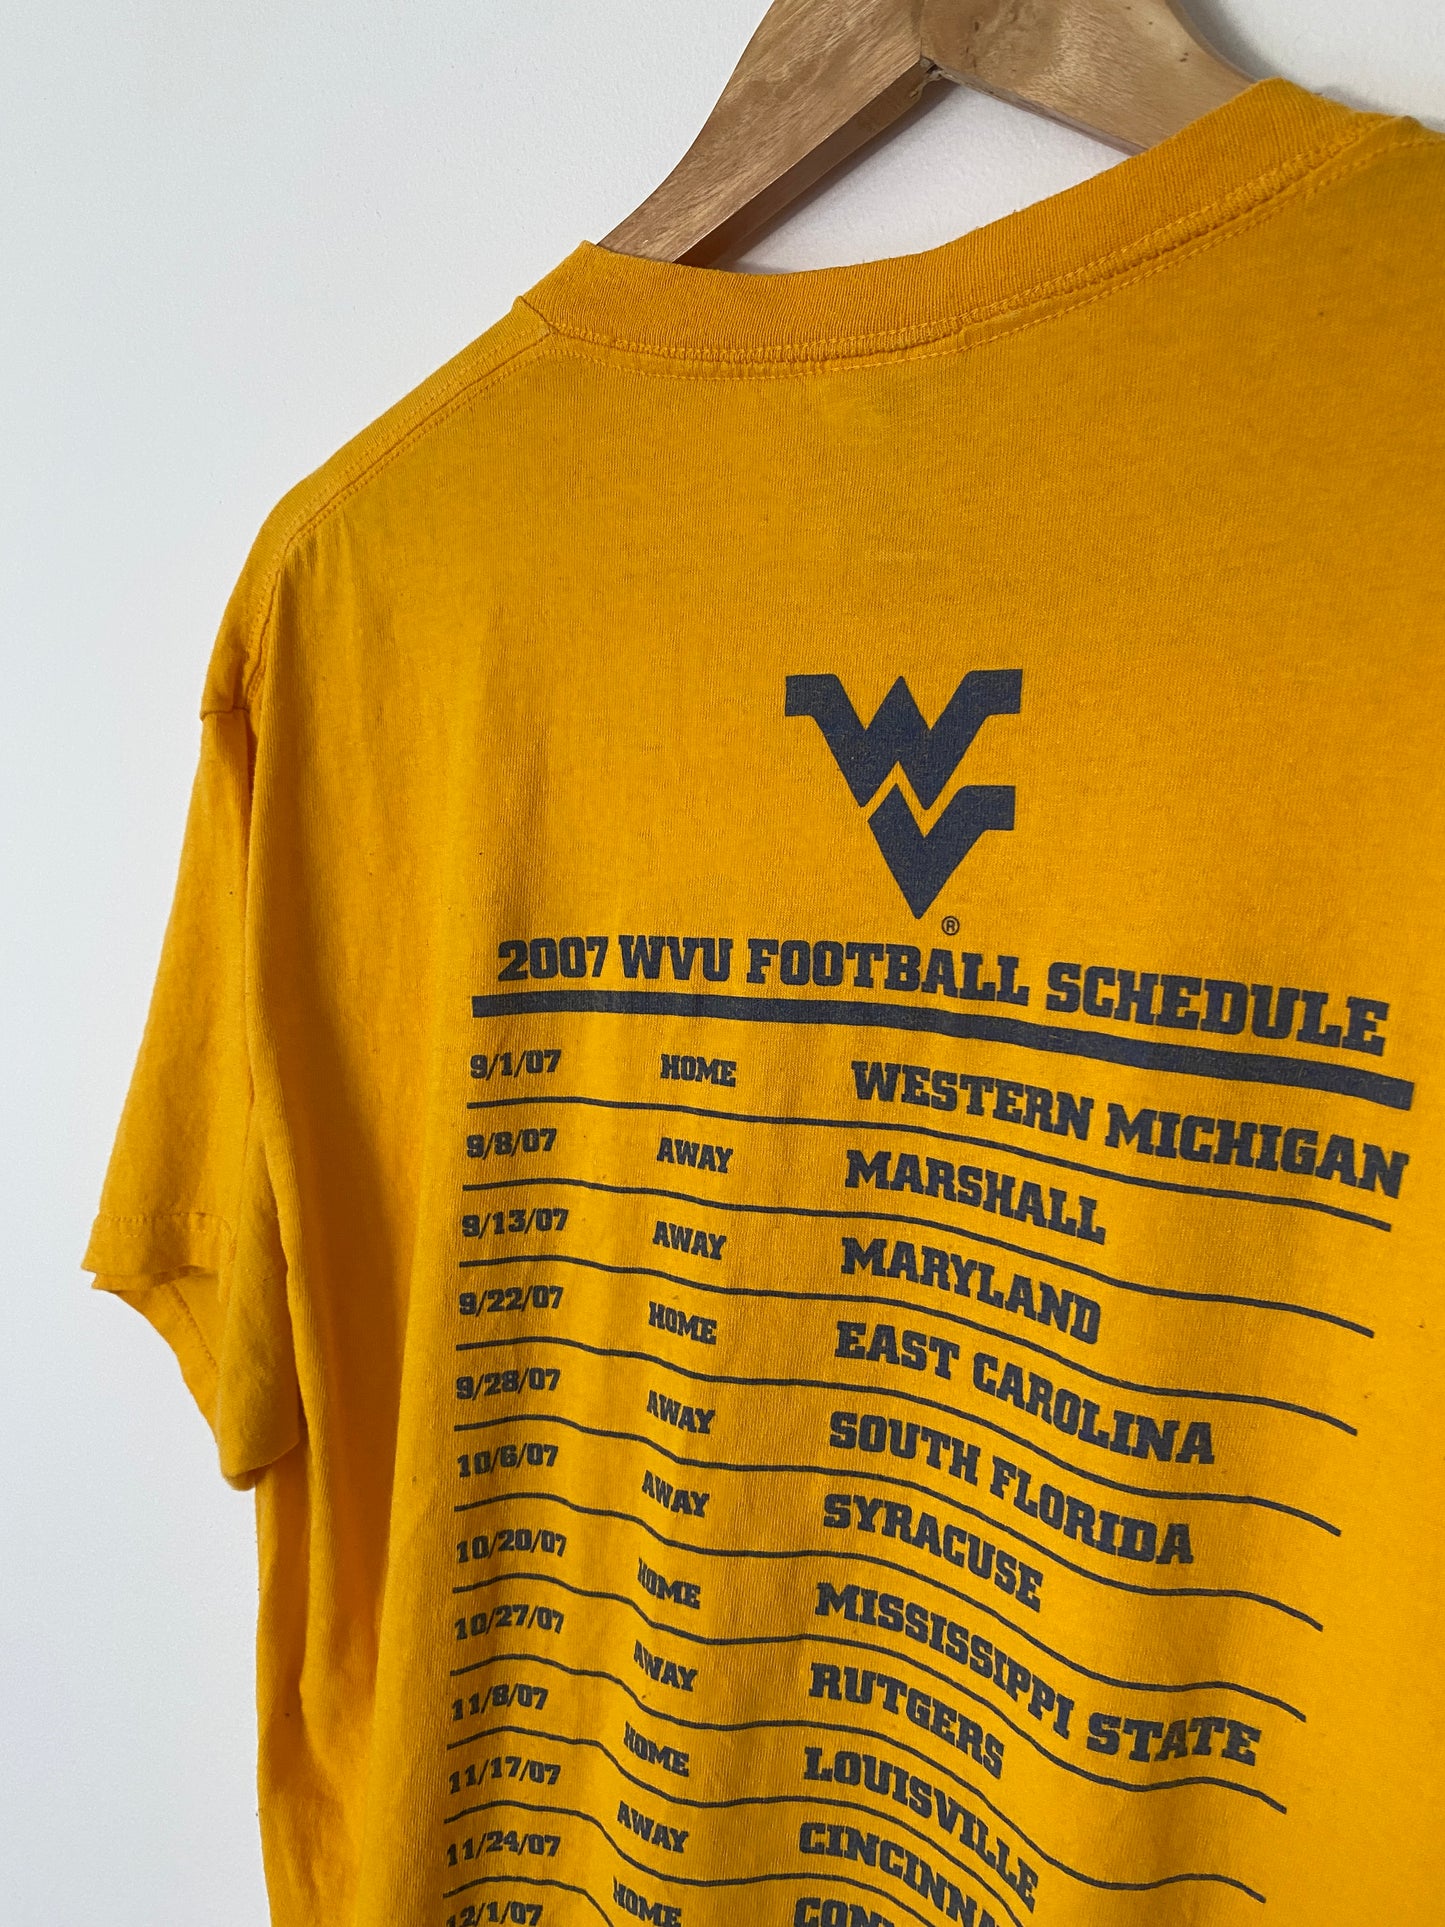 WVU Football Schedule T-Shirt - L